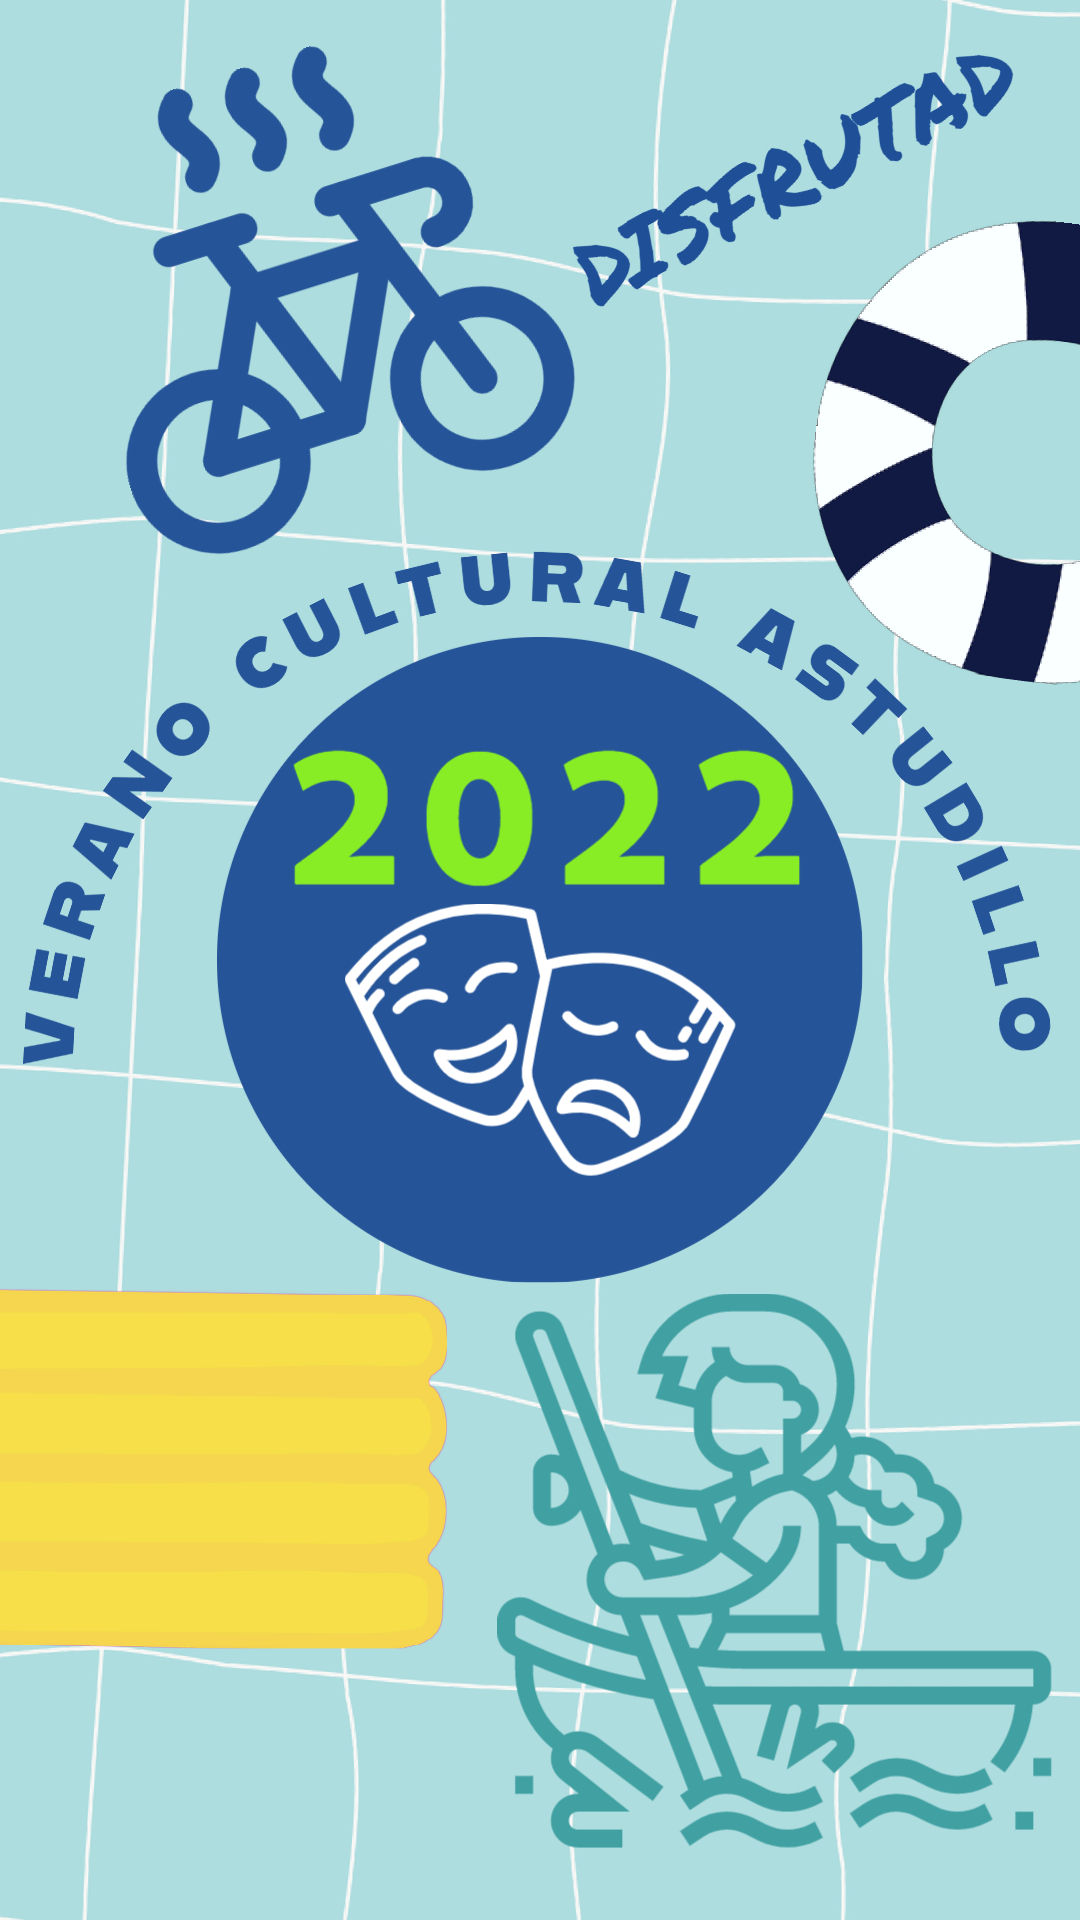 Verano Cultural 2022